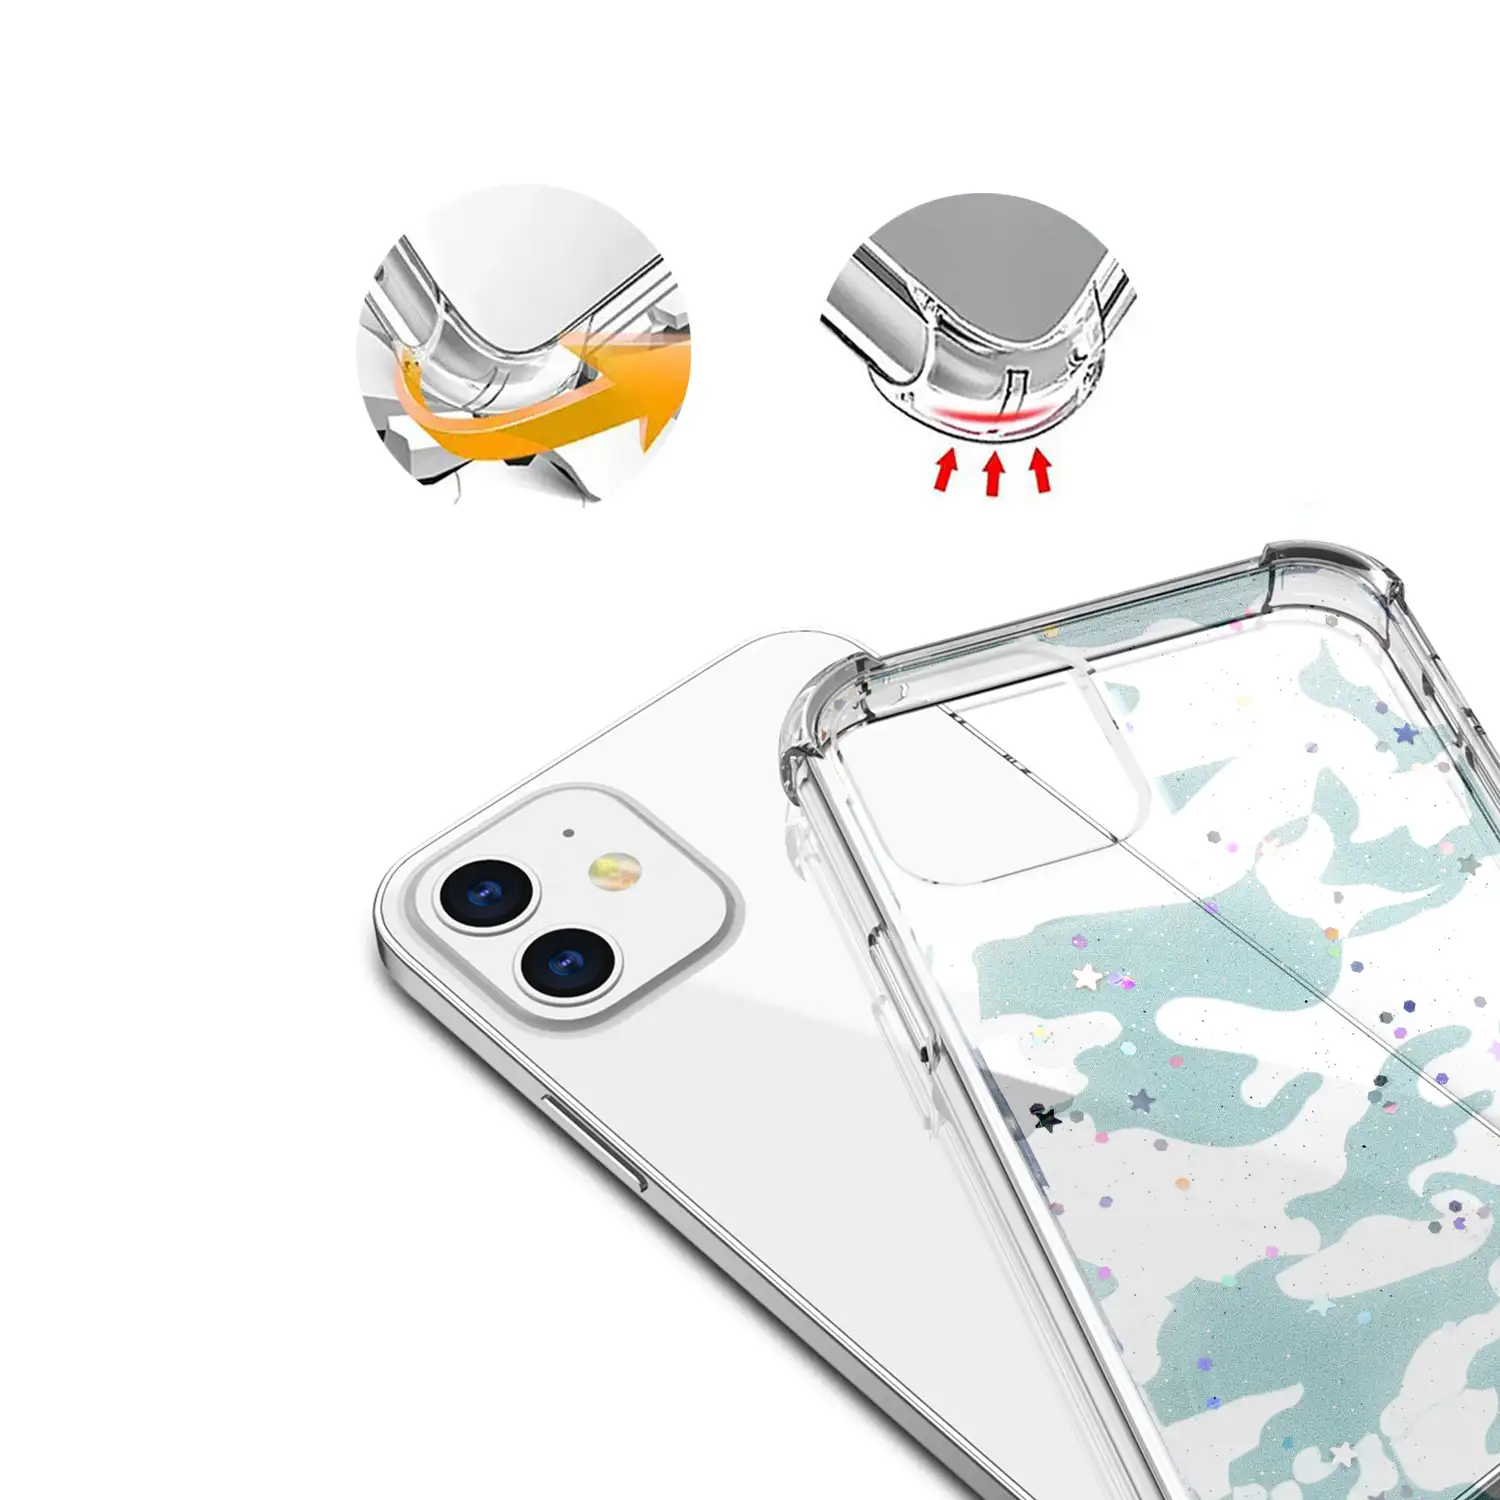 Carcasa de TPU de alta protección con diseño camuflaje urbano para iPhone 12 Mini